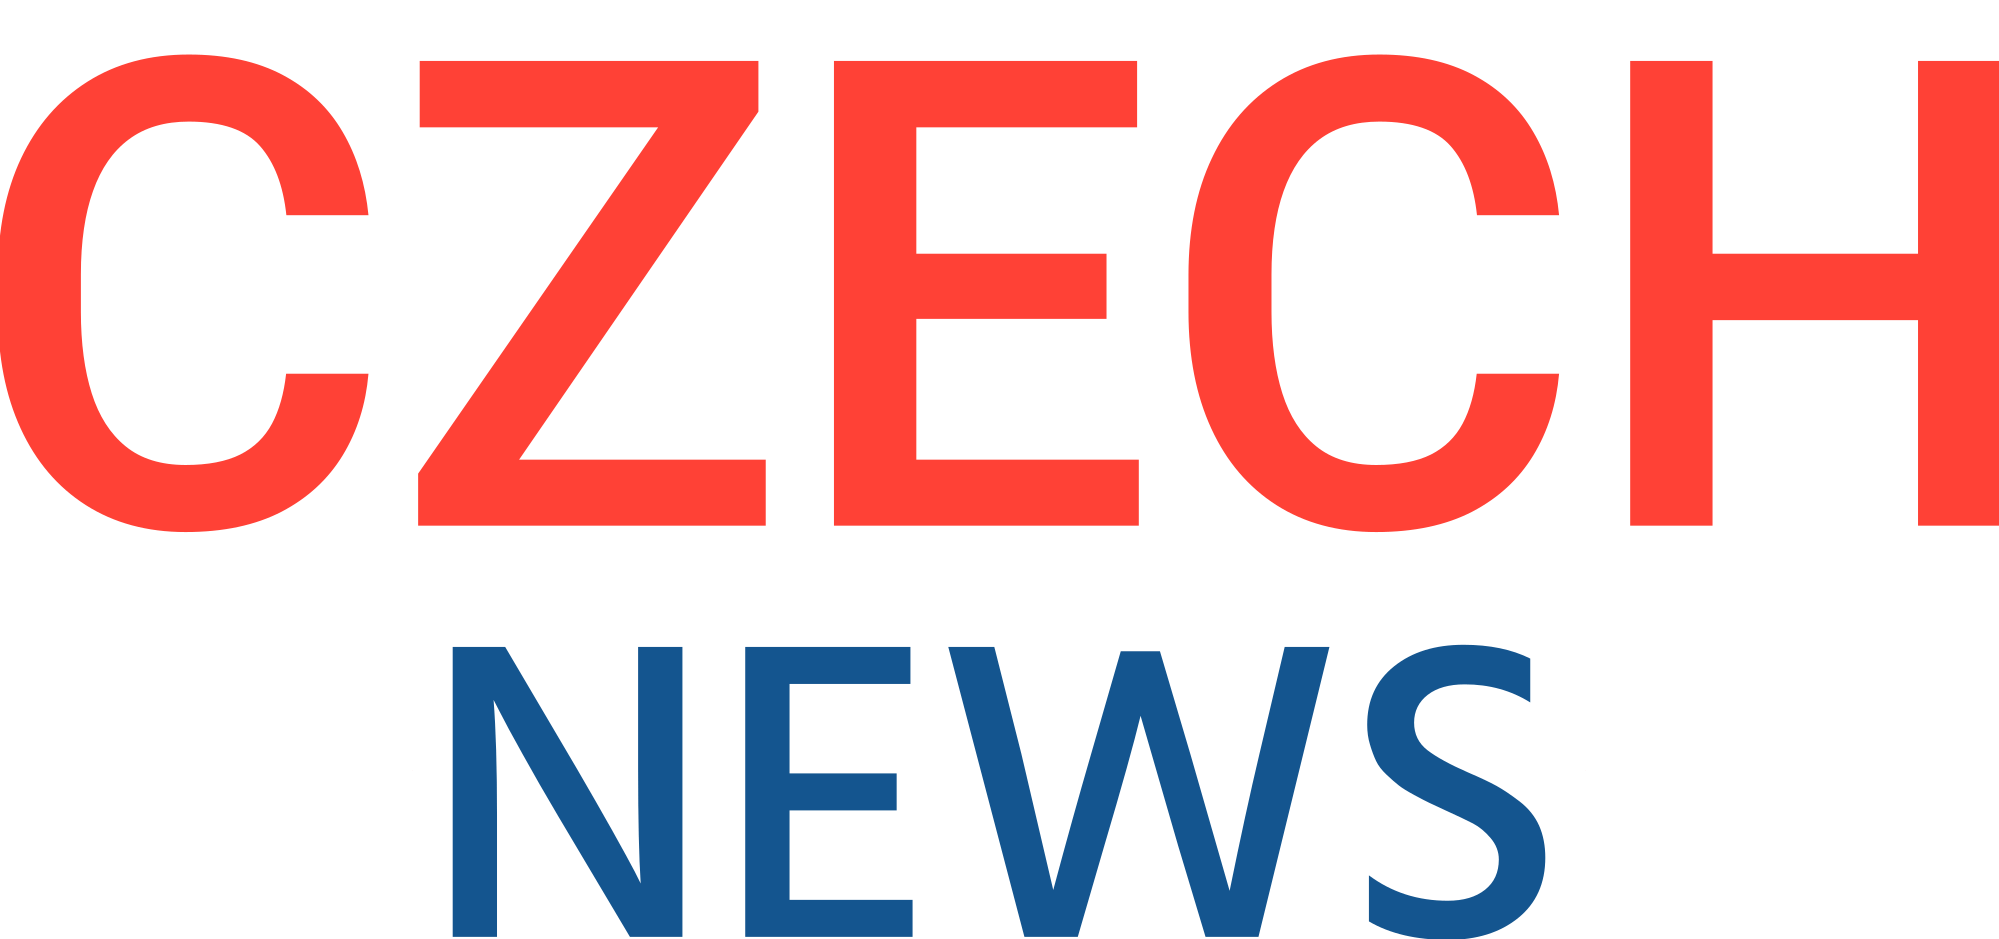 CZECH-NEWS.CZ